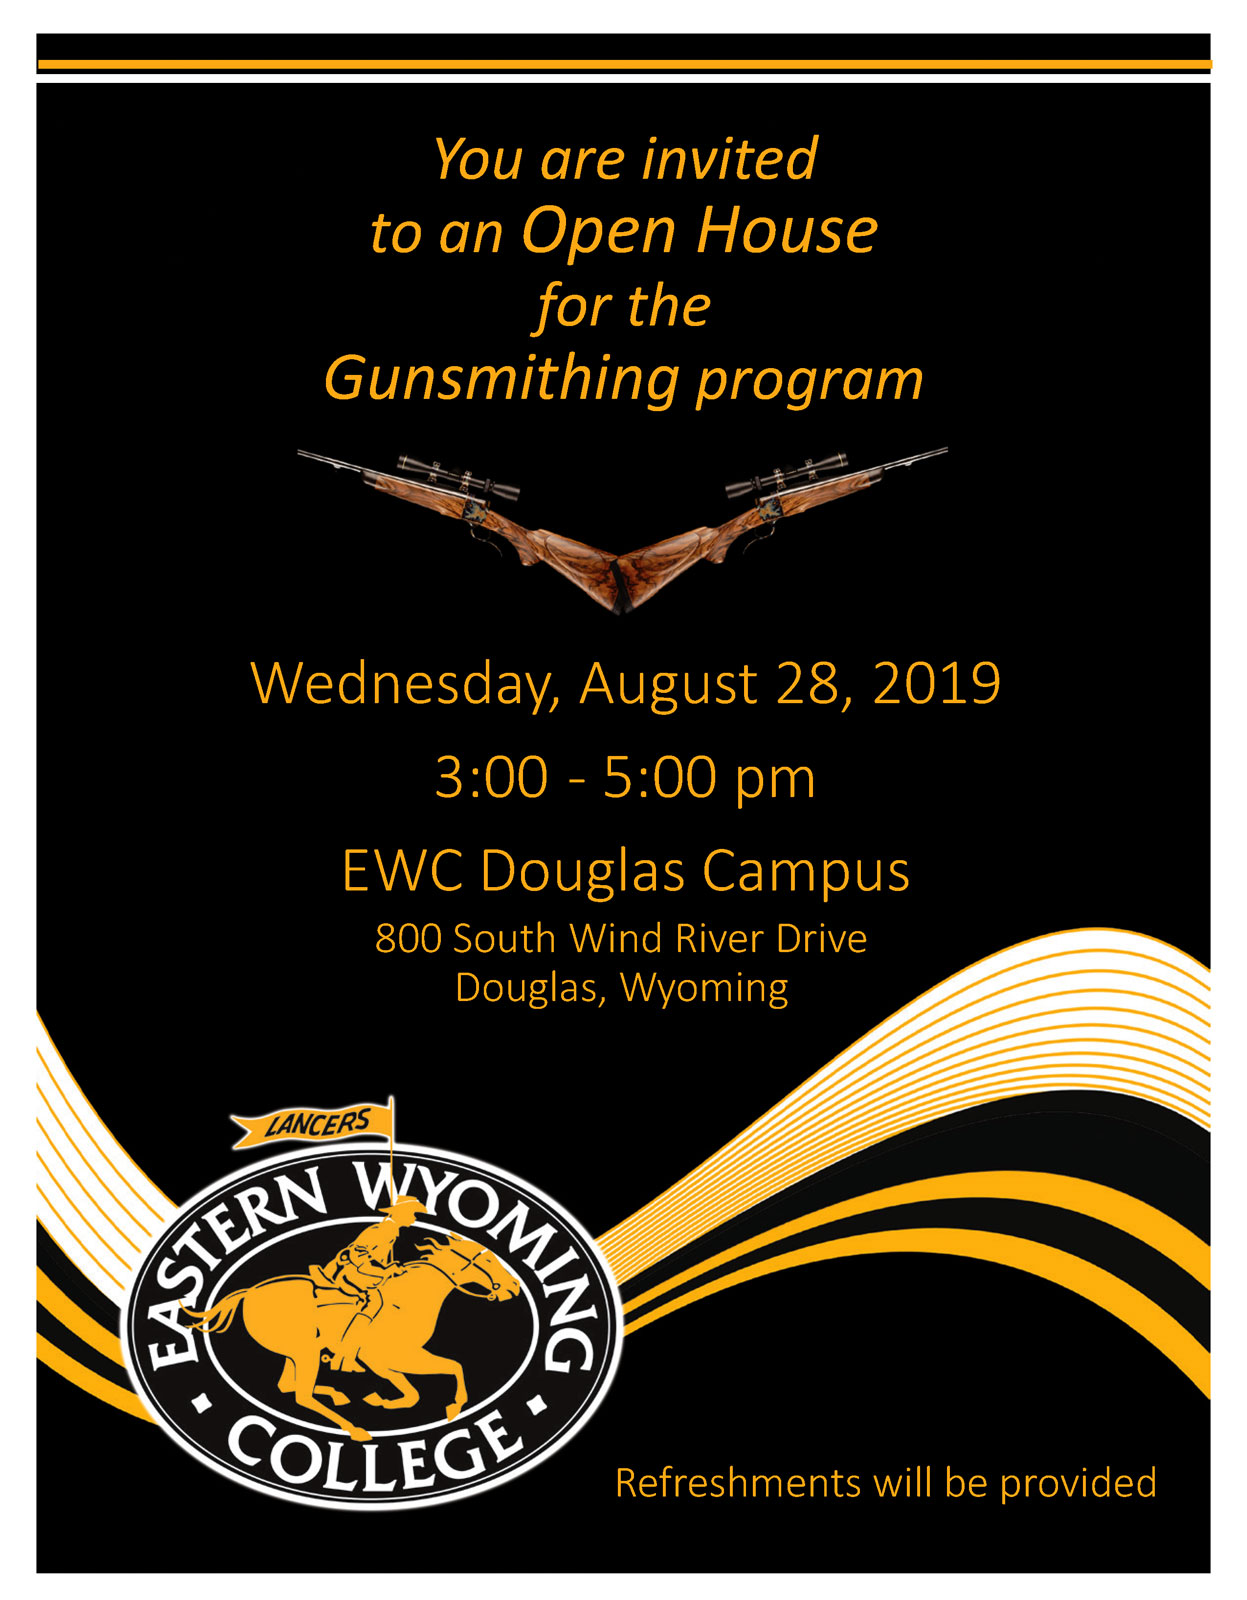 Eastern Wyoming College - Open House for Gunsmithing Program